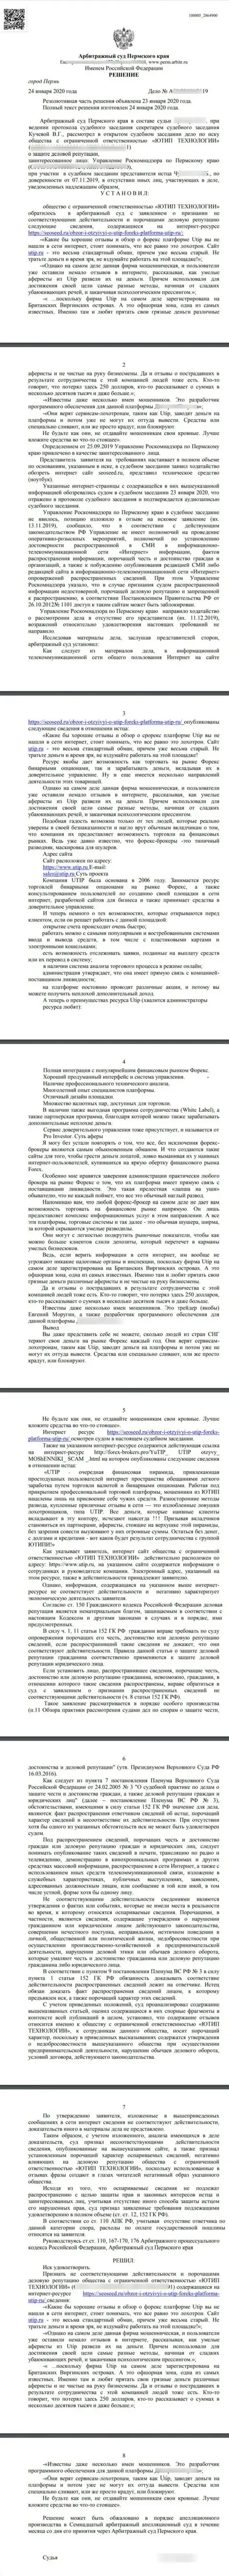 Исковое заявление ворюг ЮТИП Ру в адрес web-ресурса seoseed ru, который удовлетворён был самым гуманным судом в мире